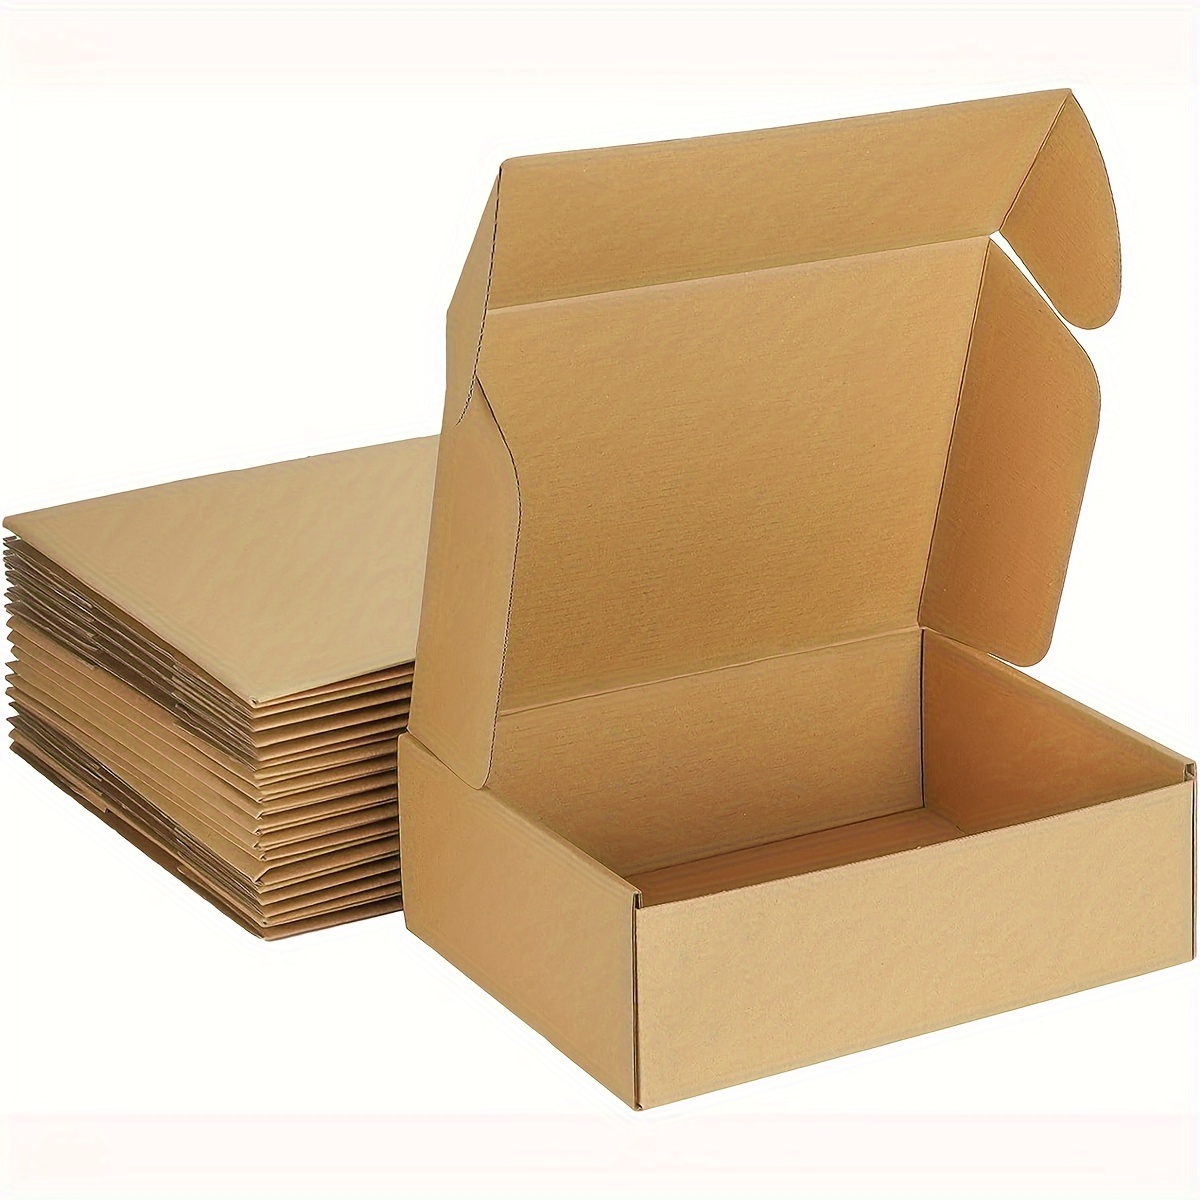 30 Mini Paper Boxes Cardboard Boxes Mini Boxes Black - Temu